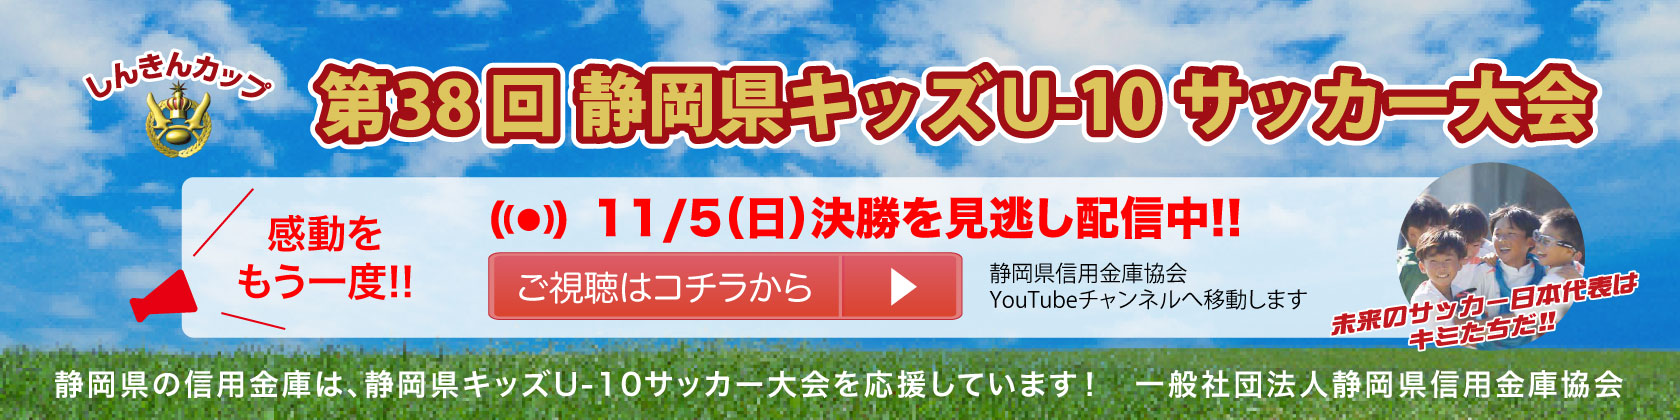 静岡県信用金庫協会Youtube